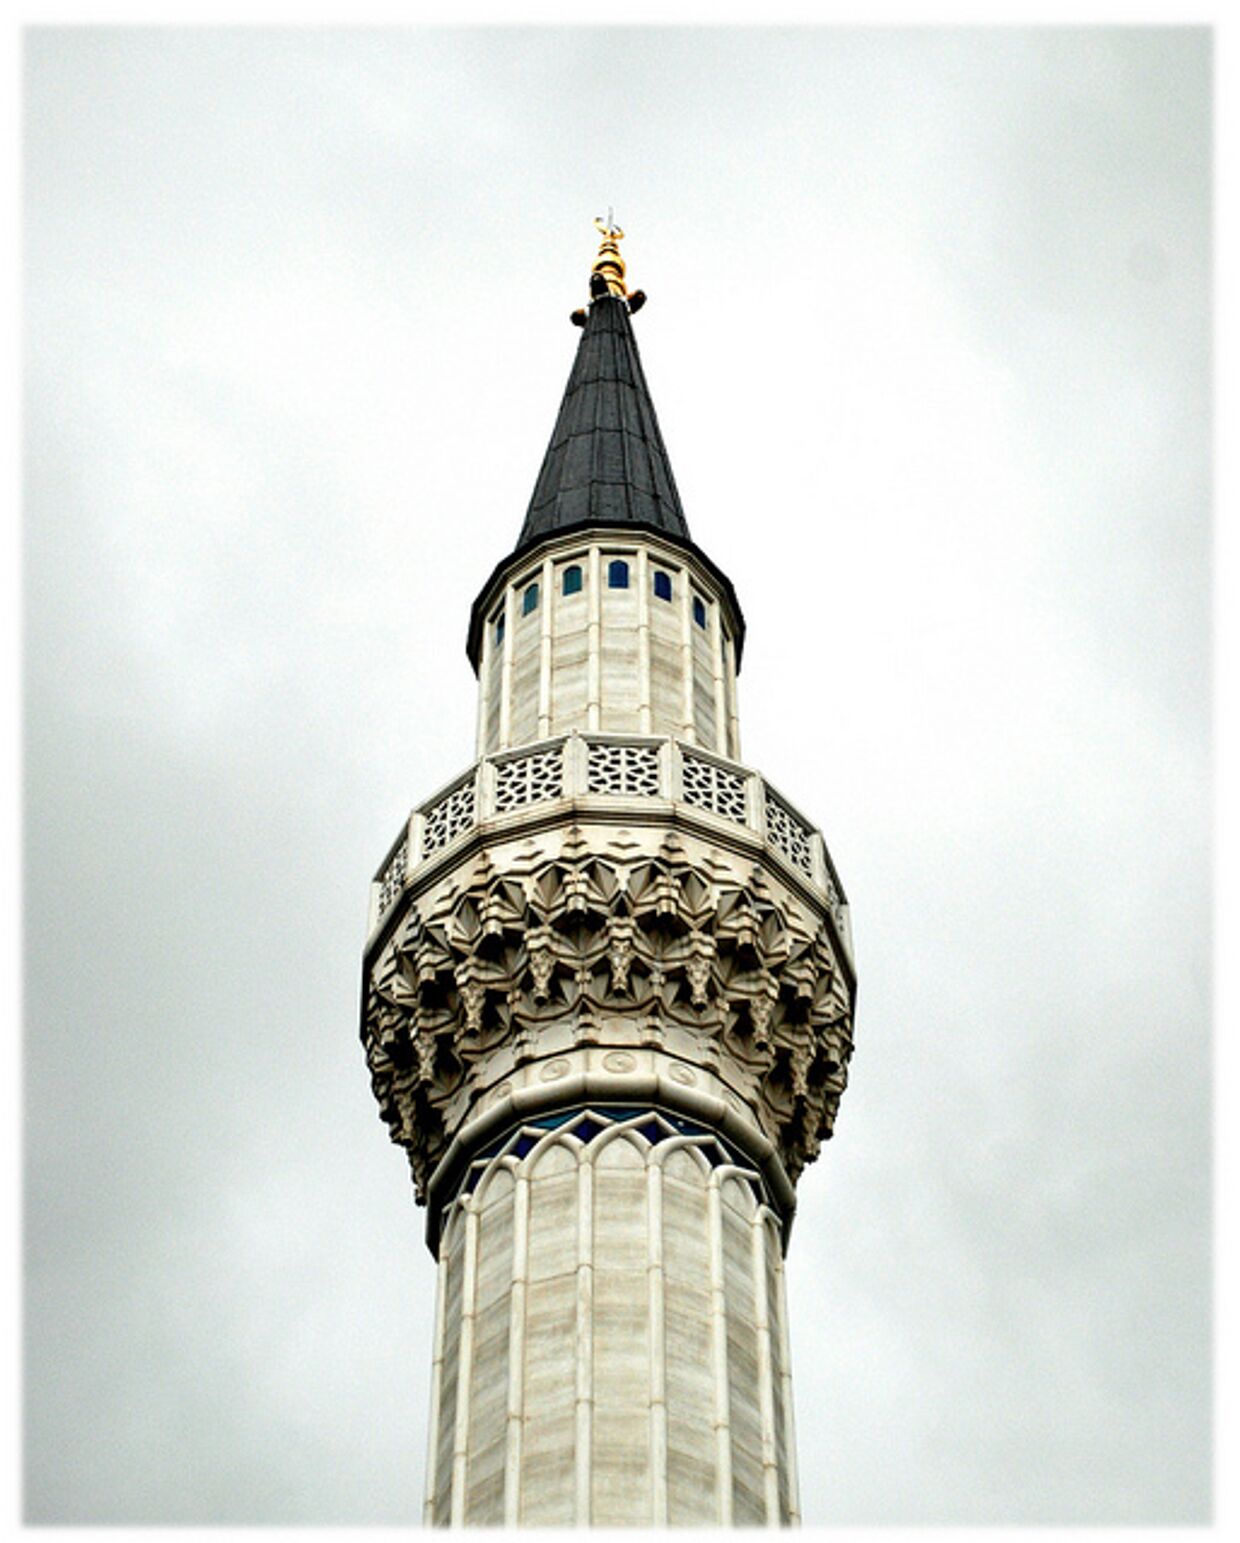 Мечеть в Берлине